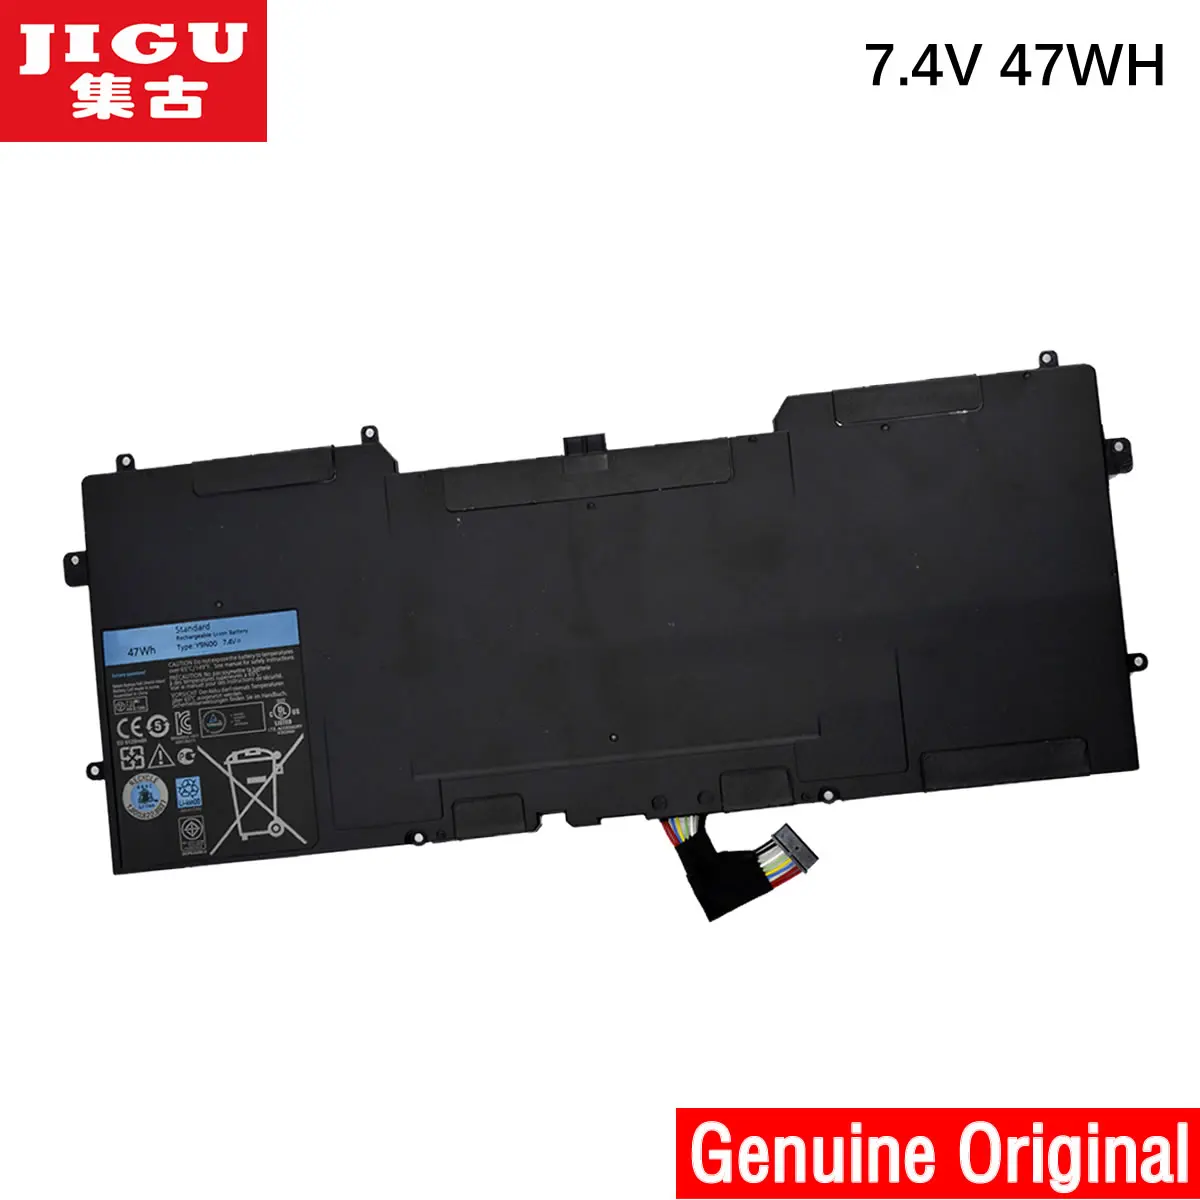 

JIGU Y9N00 Original Laptop Battery For DELL XPS 13 L321X 13-L321X L321X 13-L322X 12 9Q33 13 Ultrabook Series